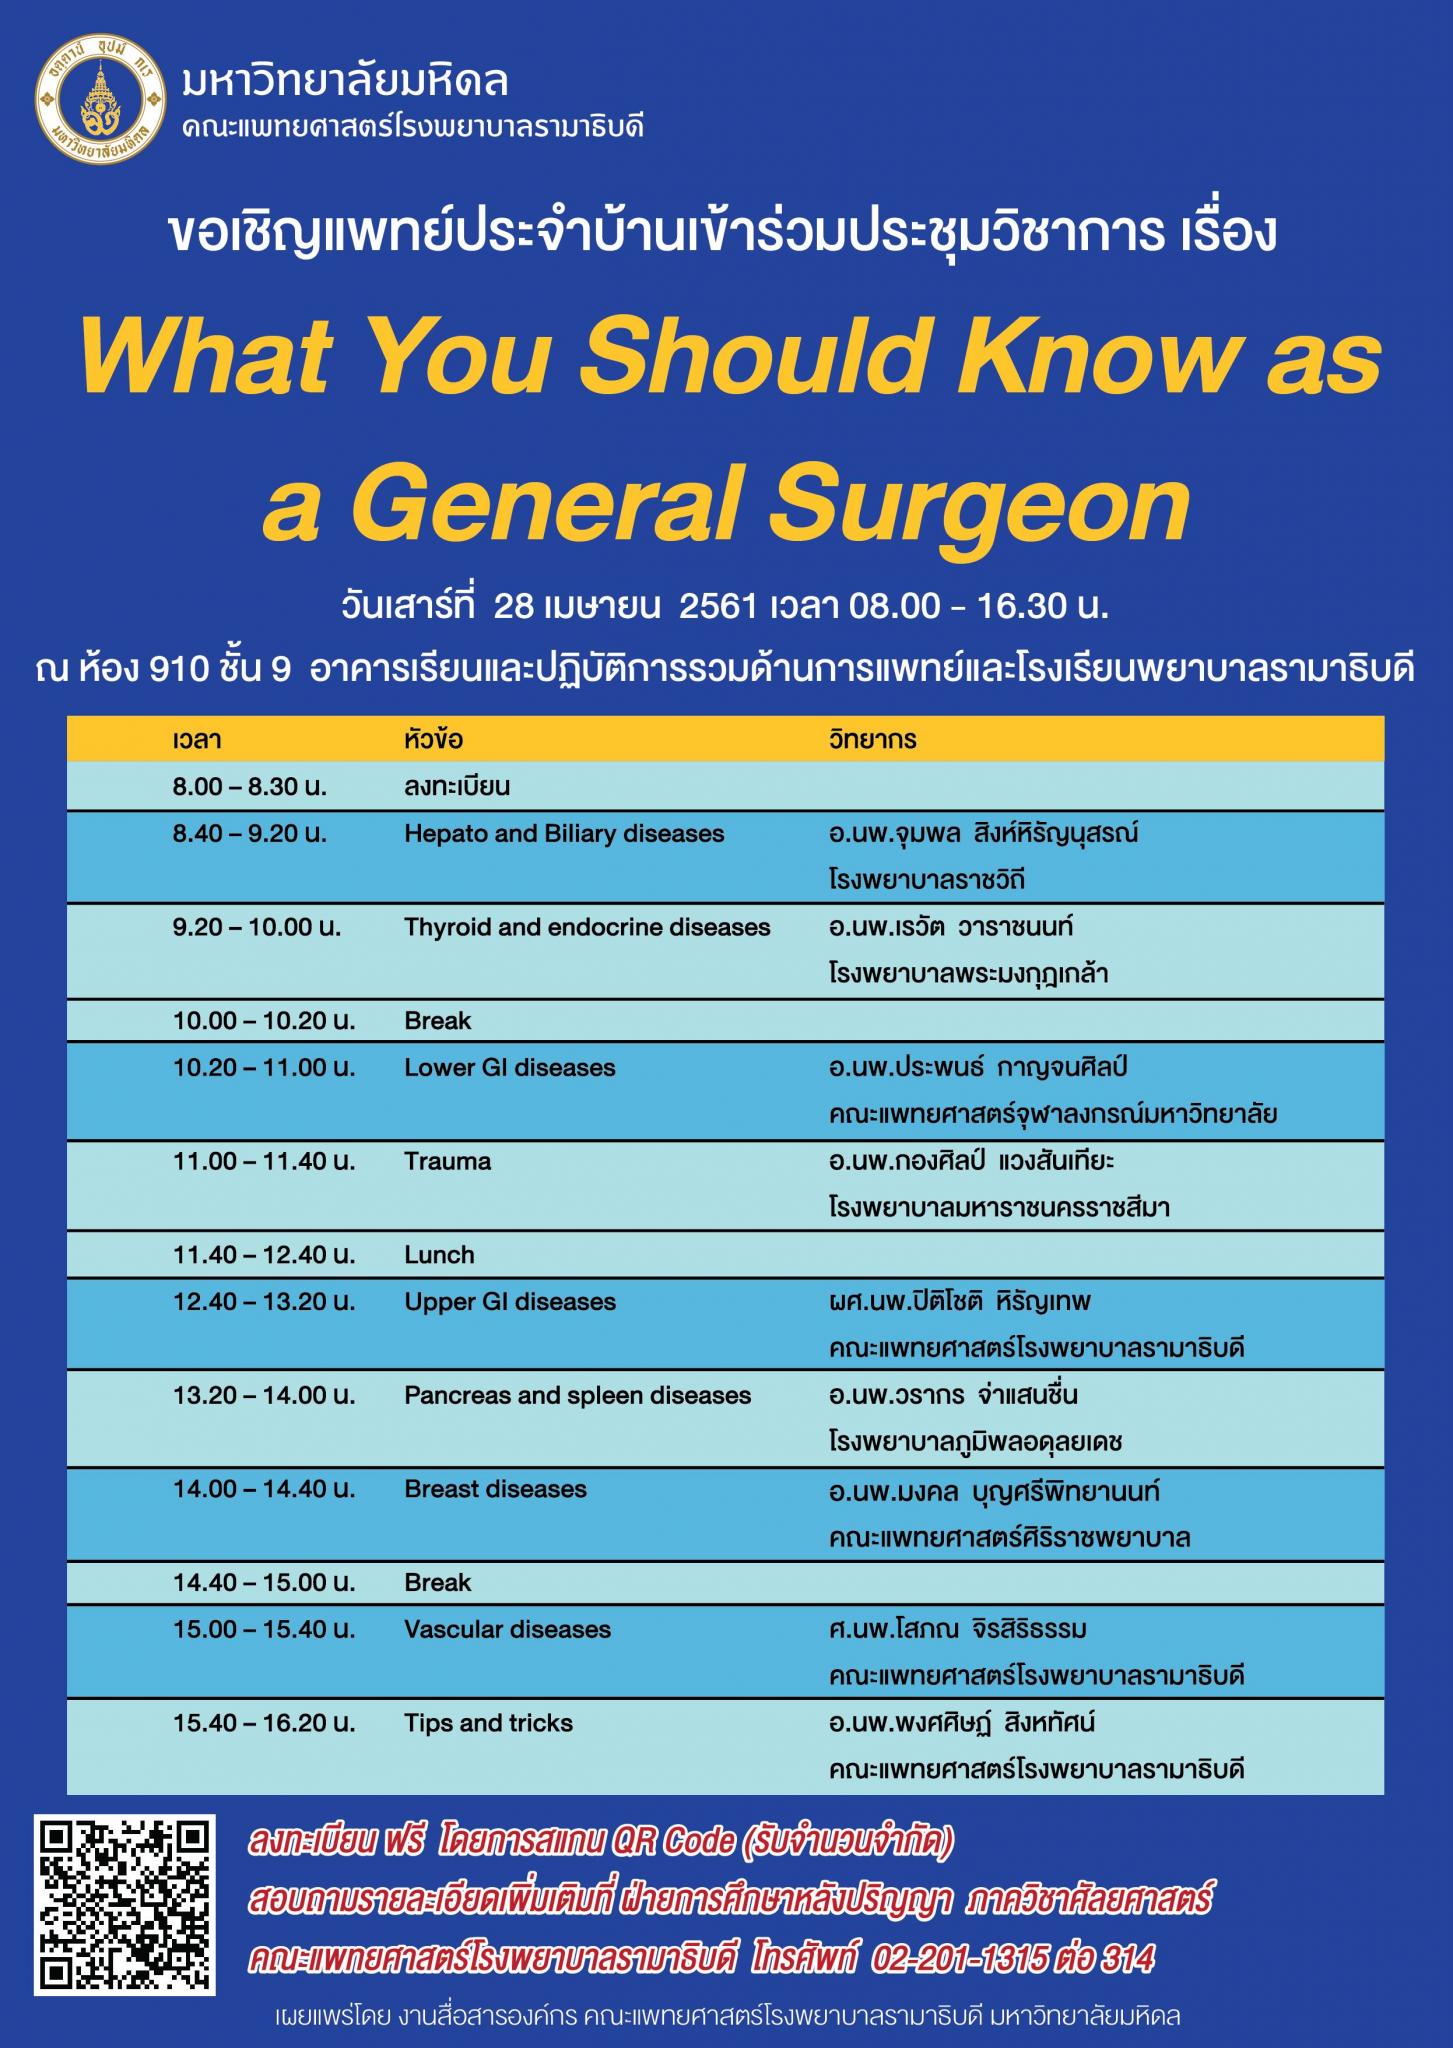 ขอเชิญเข้าร่วมประชุมวิชาการ เรื่อง What You Should Know as a General Surgeon